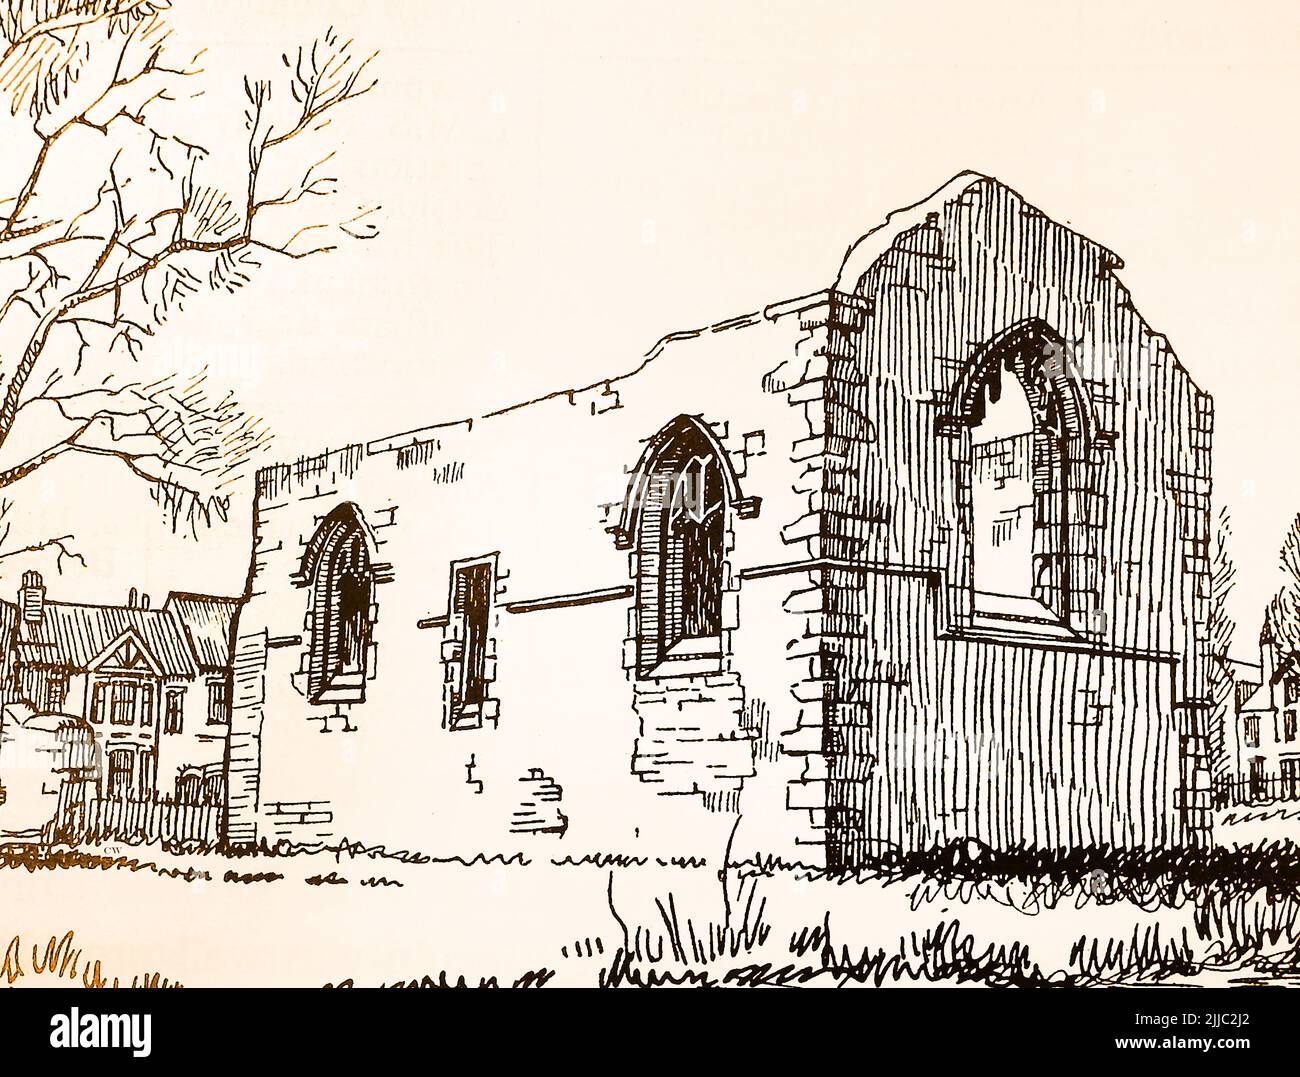 Histoire de Lincoln, Angleterre - un croquis des années 1930 des ruines de l'abbaye de Monks, une cellule monastique de St Mary's de York. La ruine sans toit date du 13th siècle, et a été modifiée ultérieurement Banque D'Images